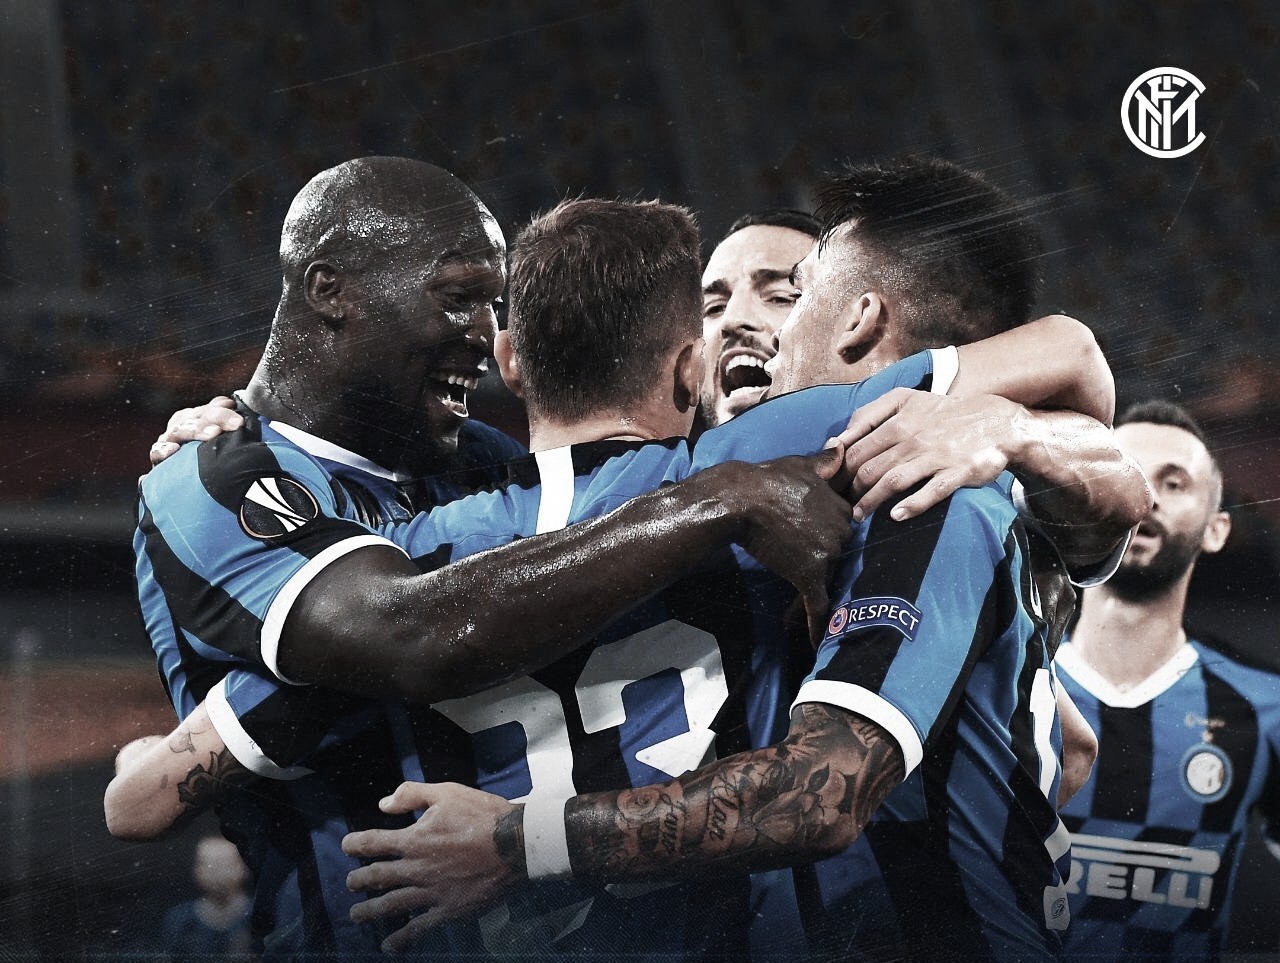 Conte exalta jogadores da Inter após classificação à final da Liga Europa: "Crédito para eles"